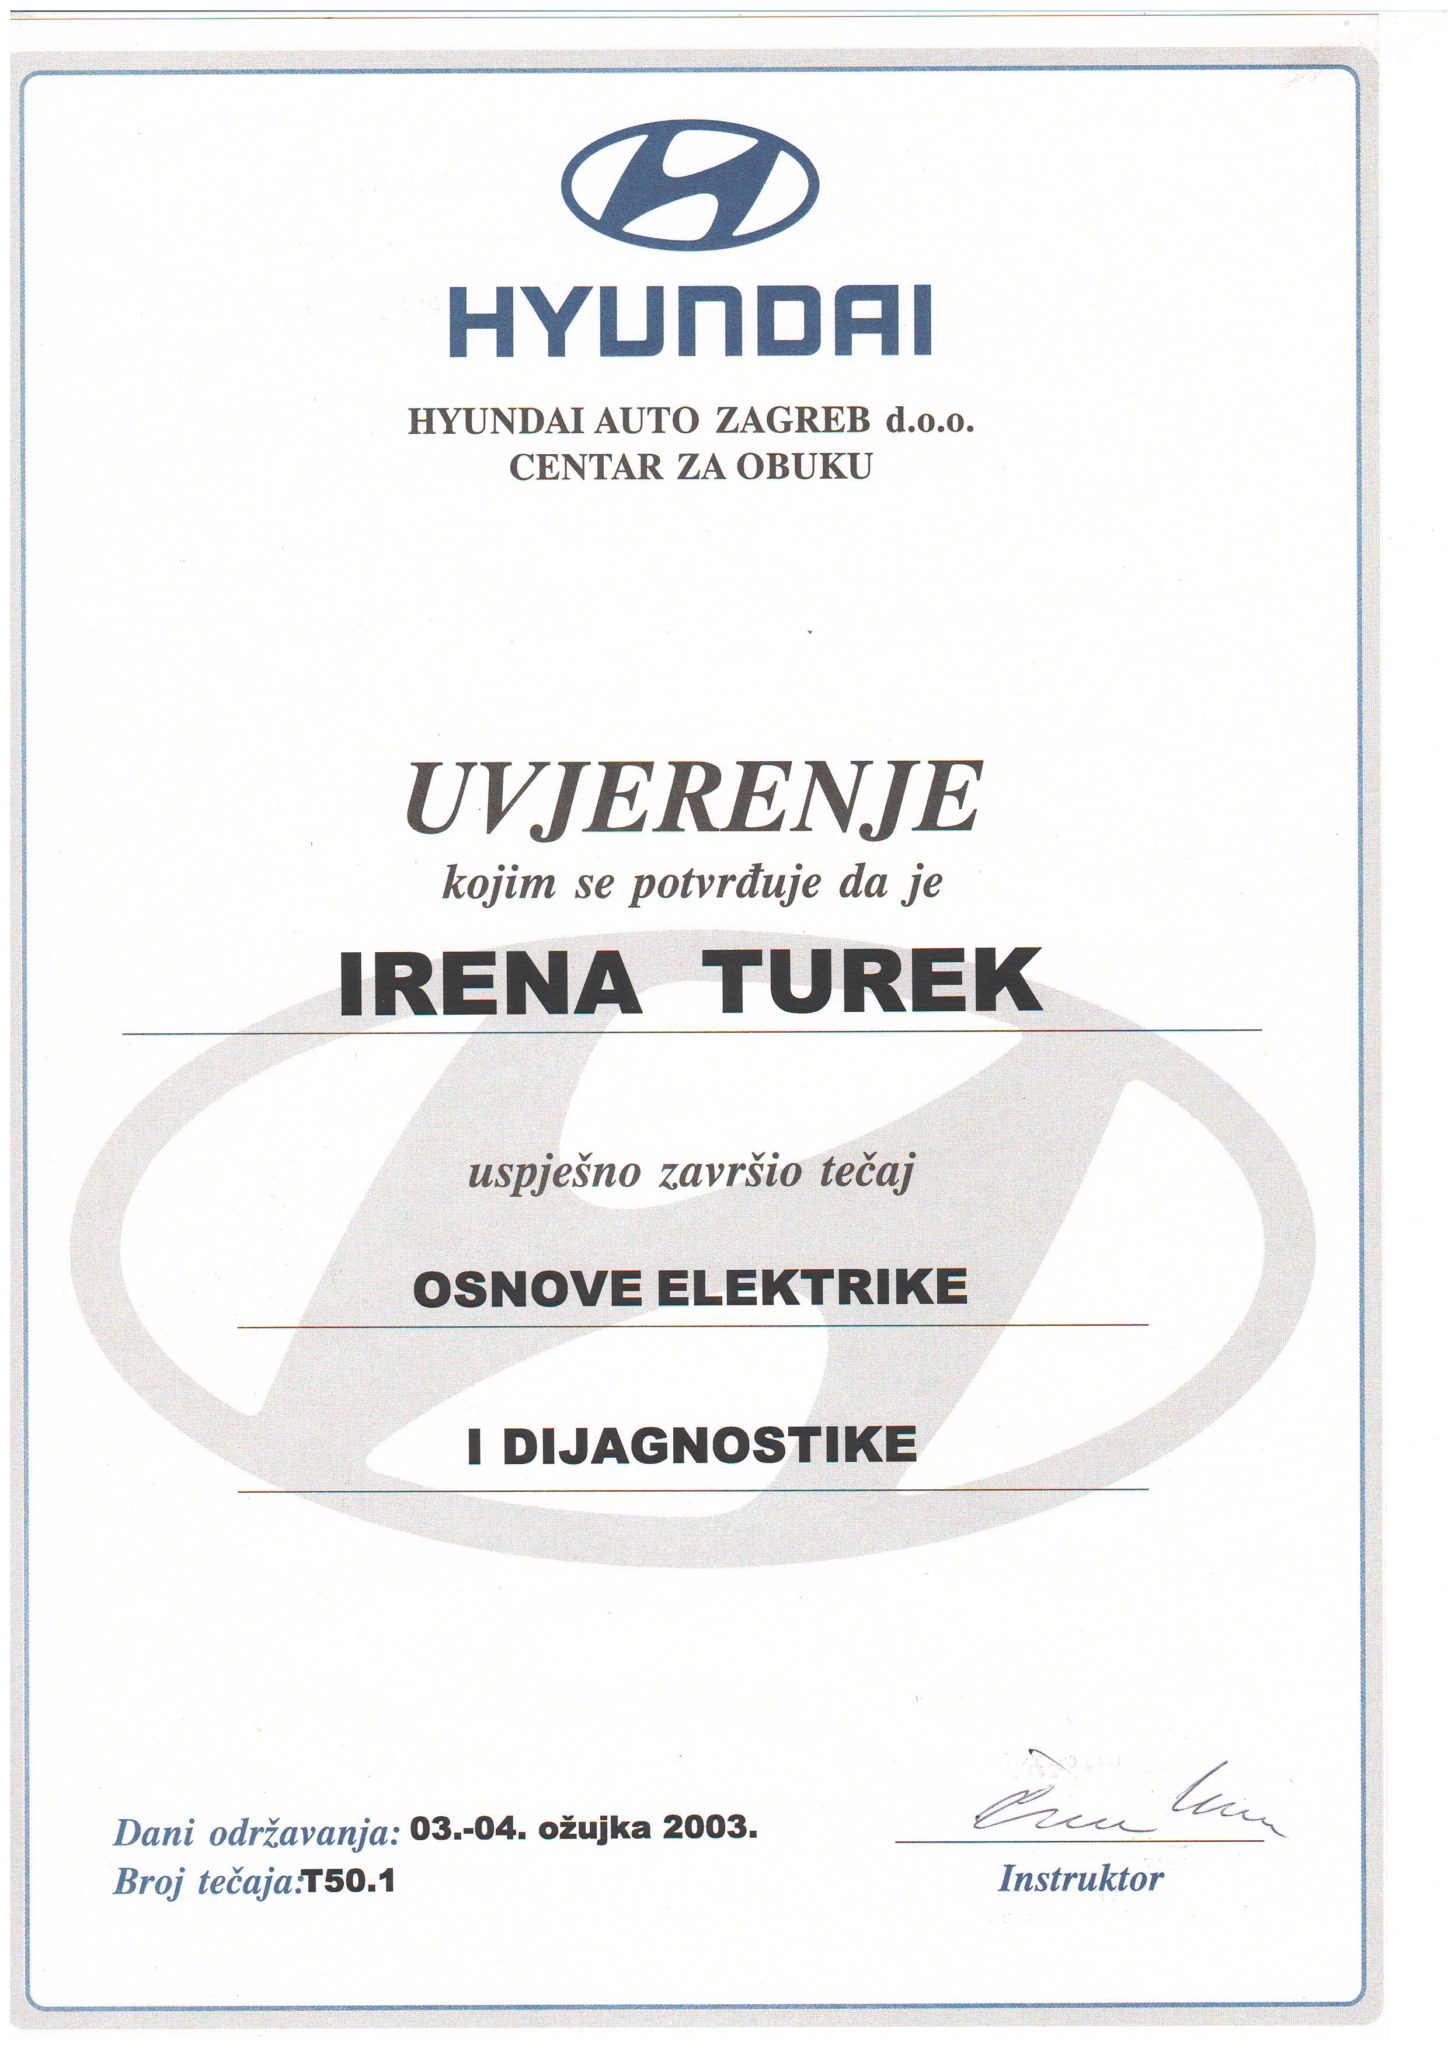 Hyundai - Osnove elektrike i dijagnostike